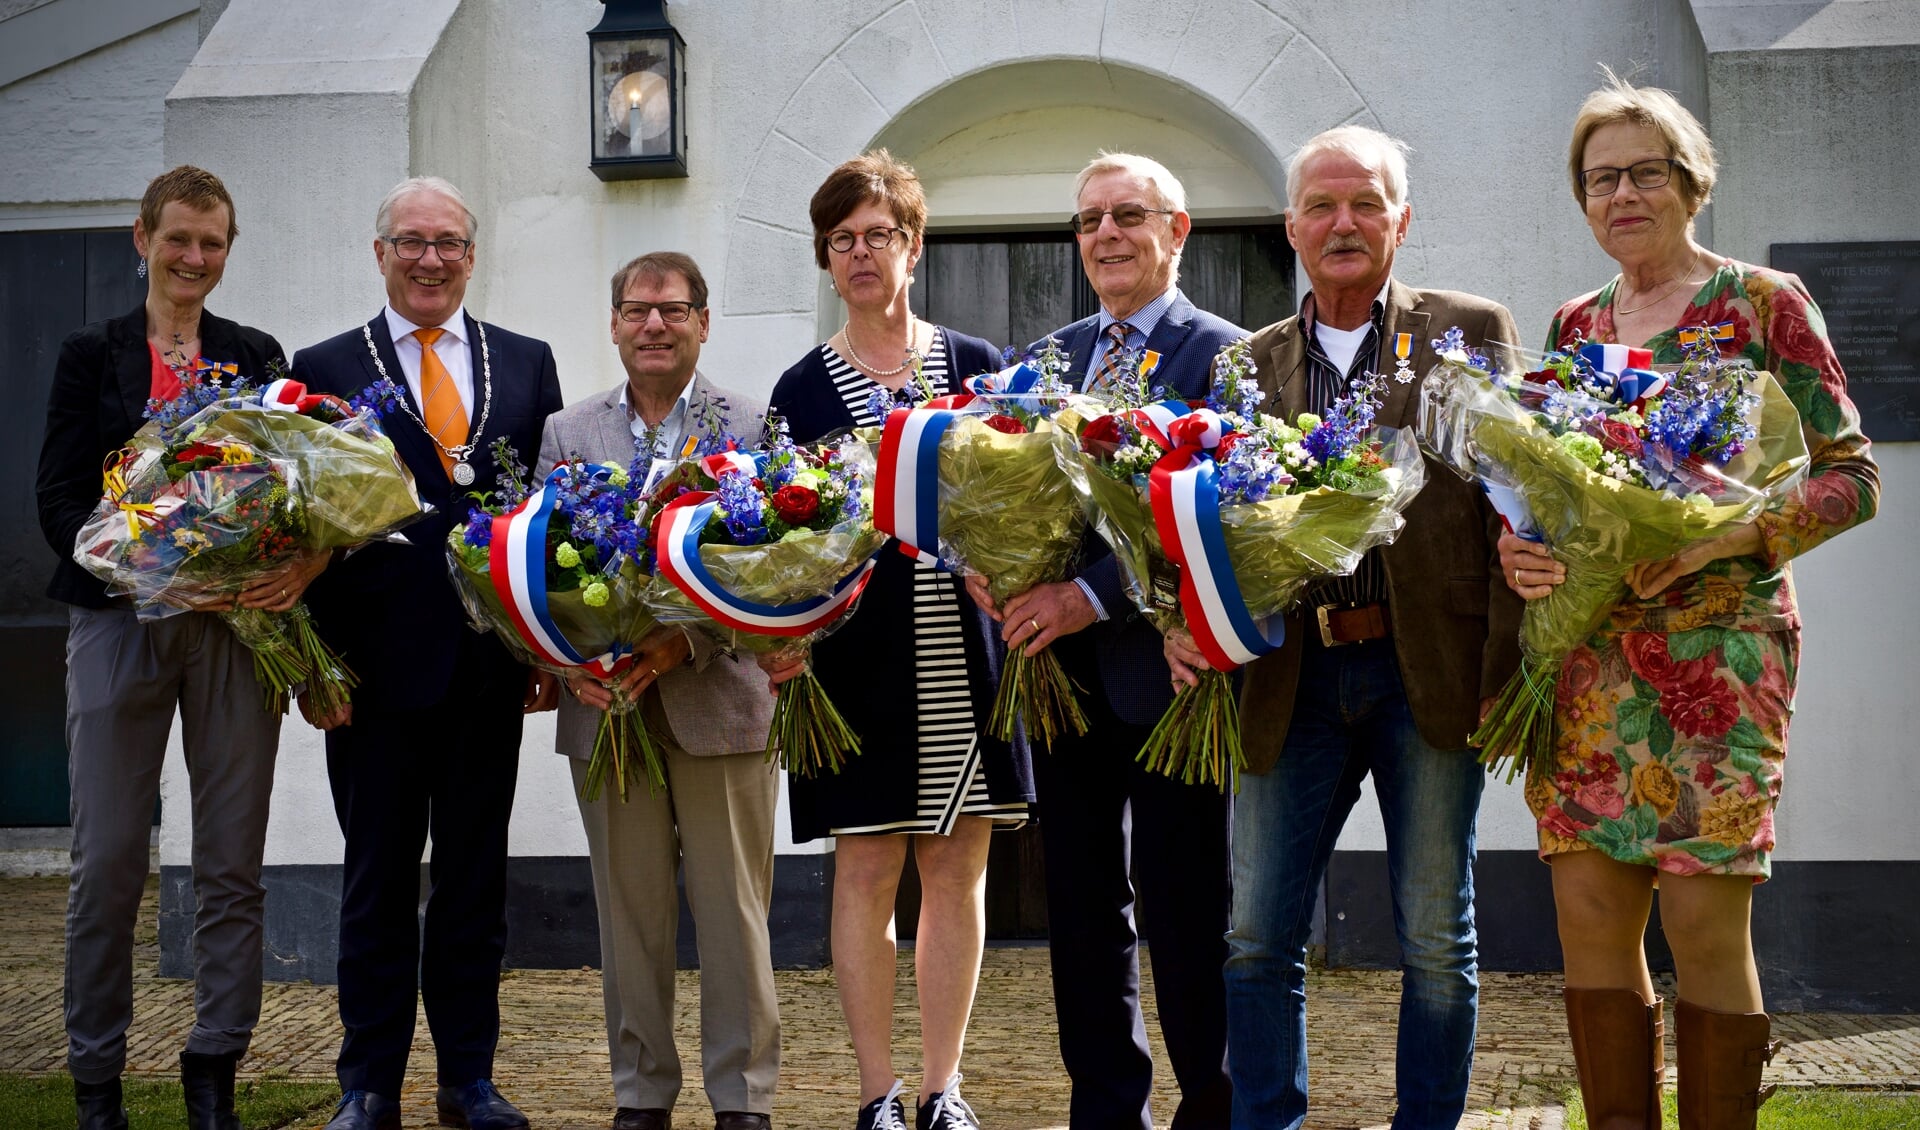 V.l.n.r.: Lideke van Riel- Oudejans, burgemeester Hans Romeyn, Guus Klaase, Antoinette Bontje, Herman Limmen, Frans Endel, Nora de Bruyn-IJssennagger